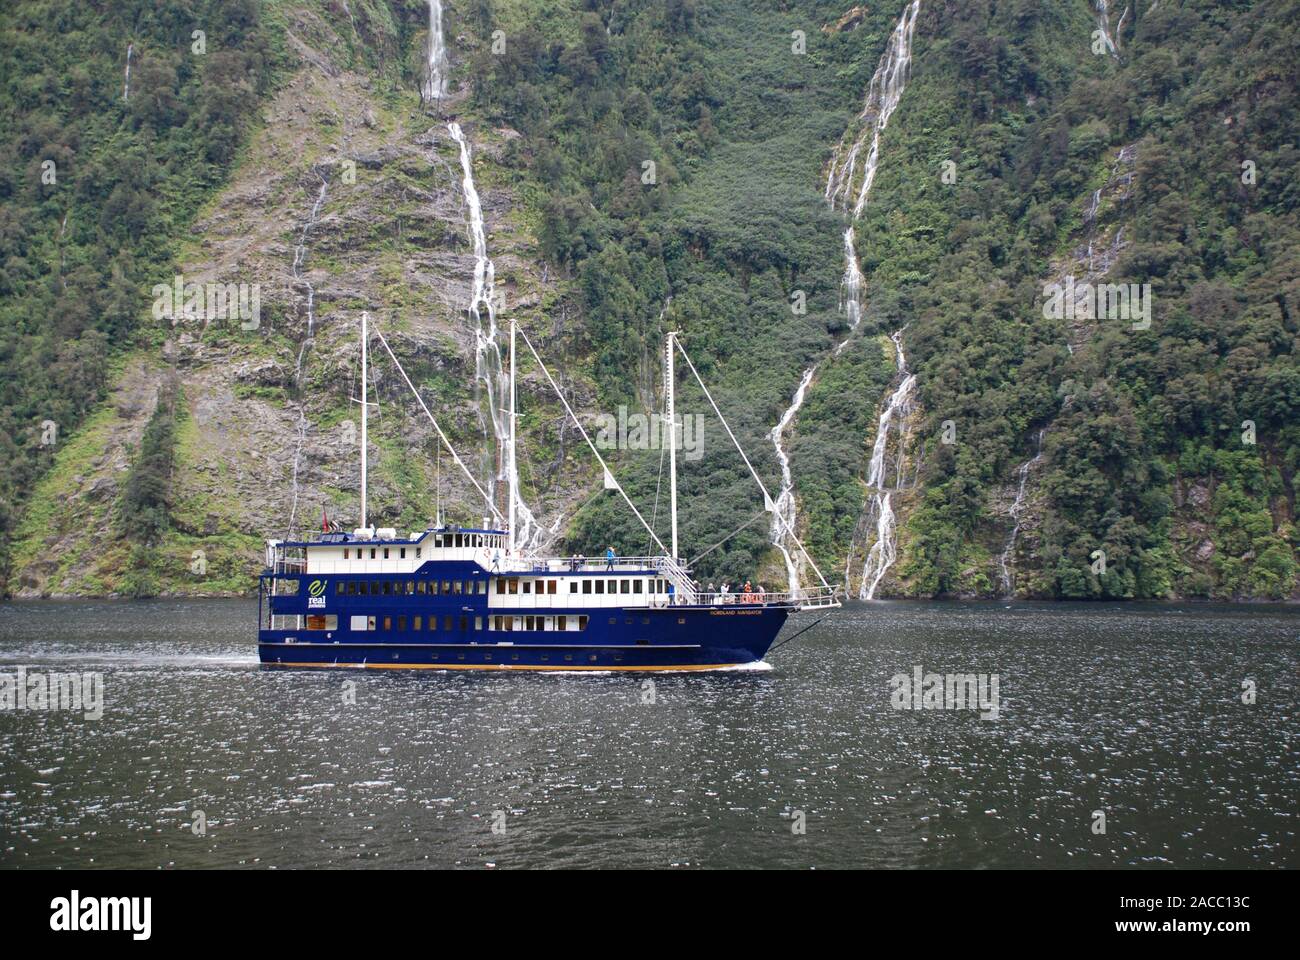 Cruise ship on Doubtful Sound, New Zealand Stock Photo